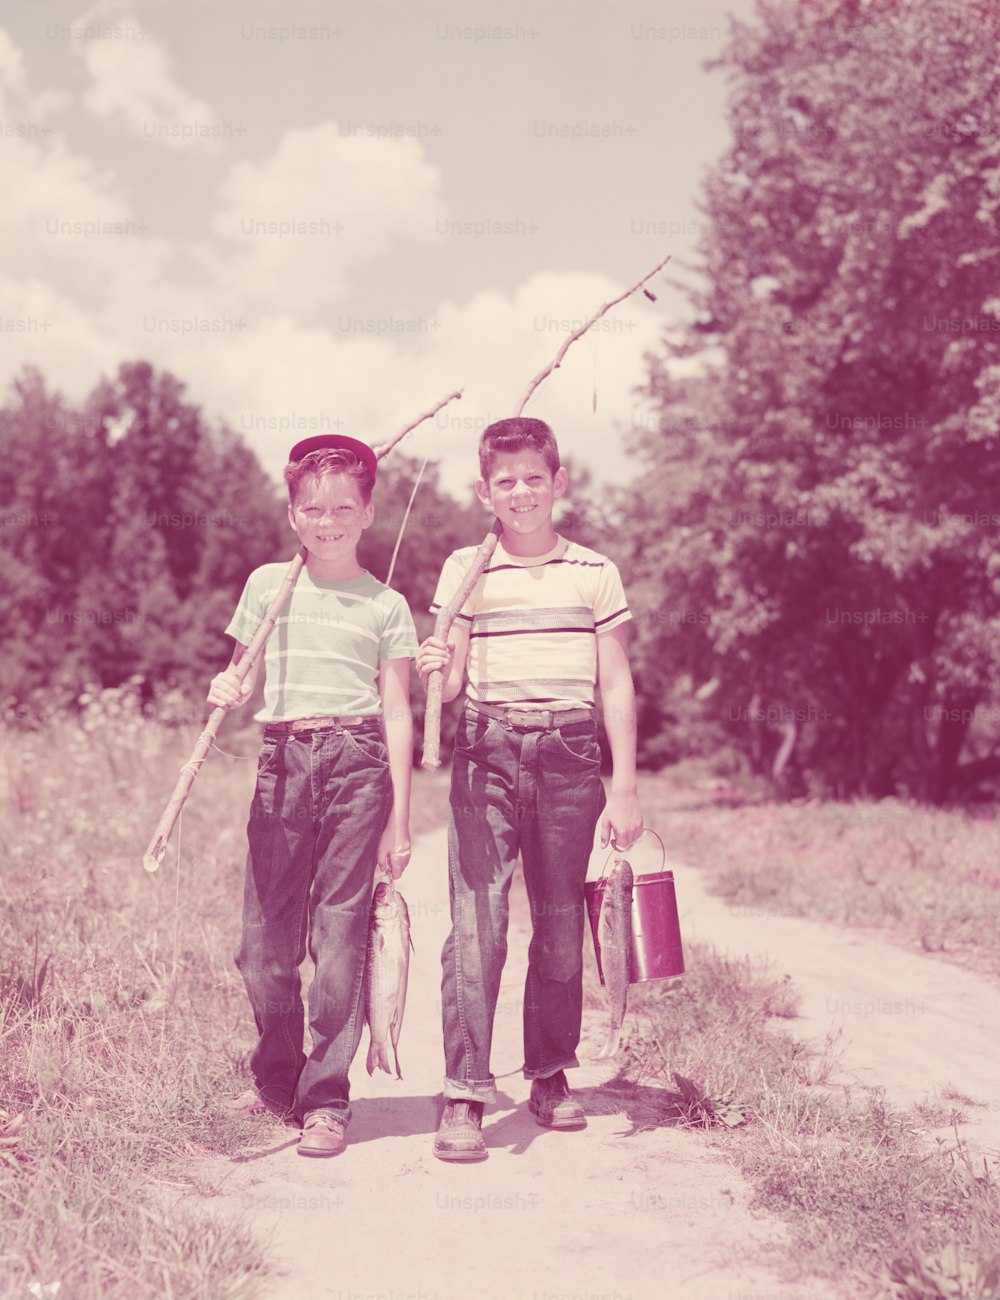 ÉTATS-UNIS - Vers les années 1950 : Deux garçons marchant dans la ruelle, portant des cannes à pêche en brindilles.